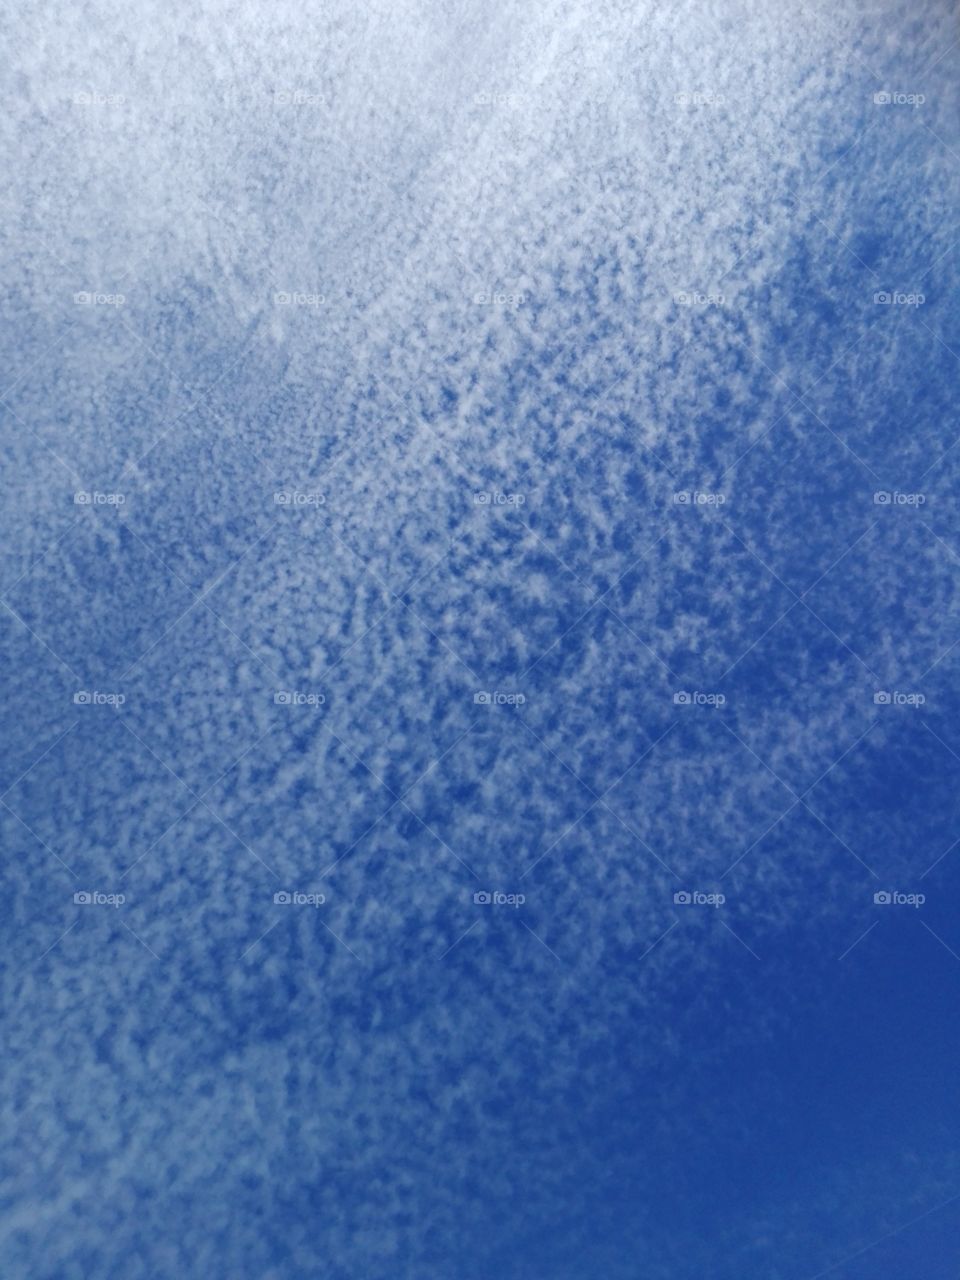 sfumature delle nuvole